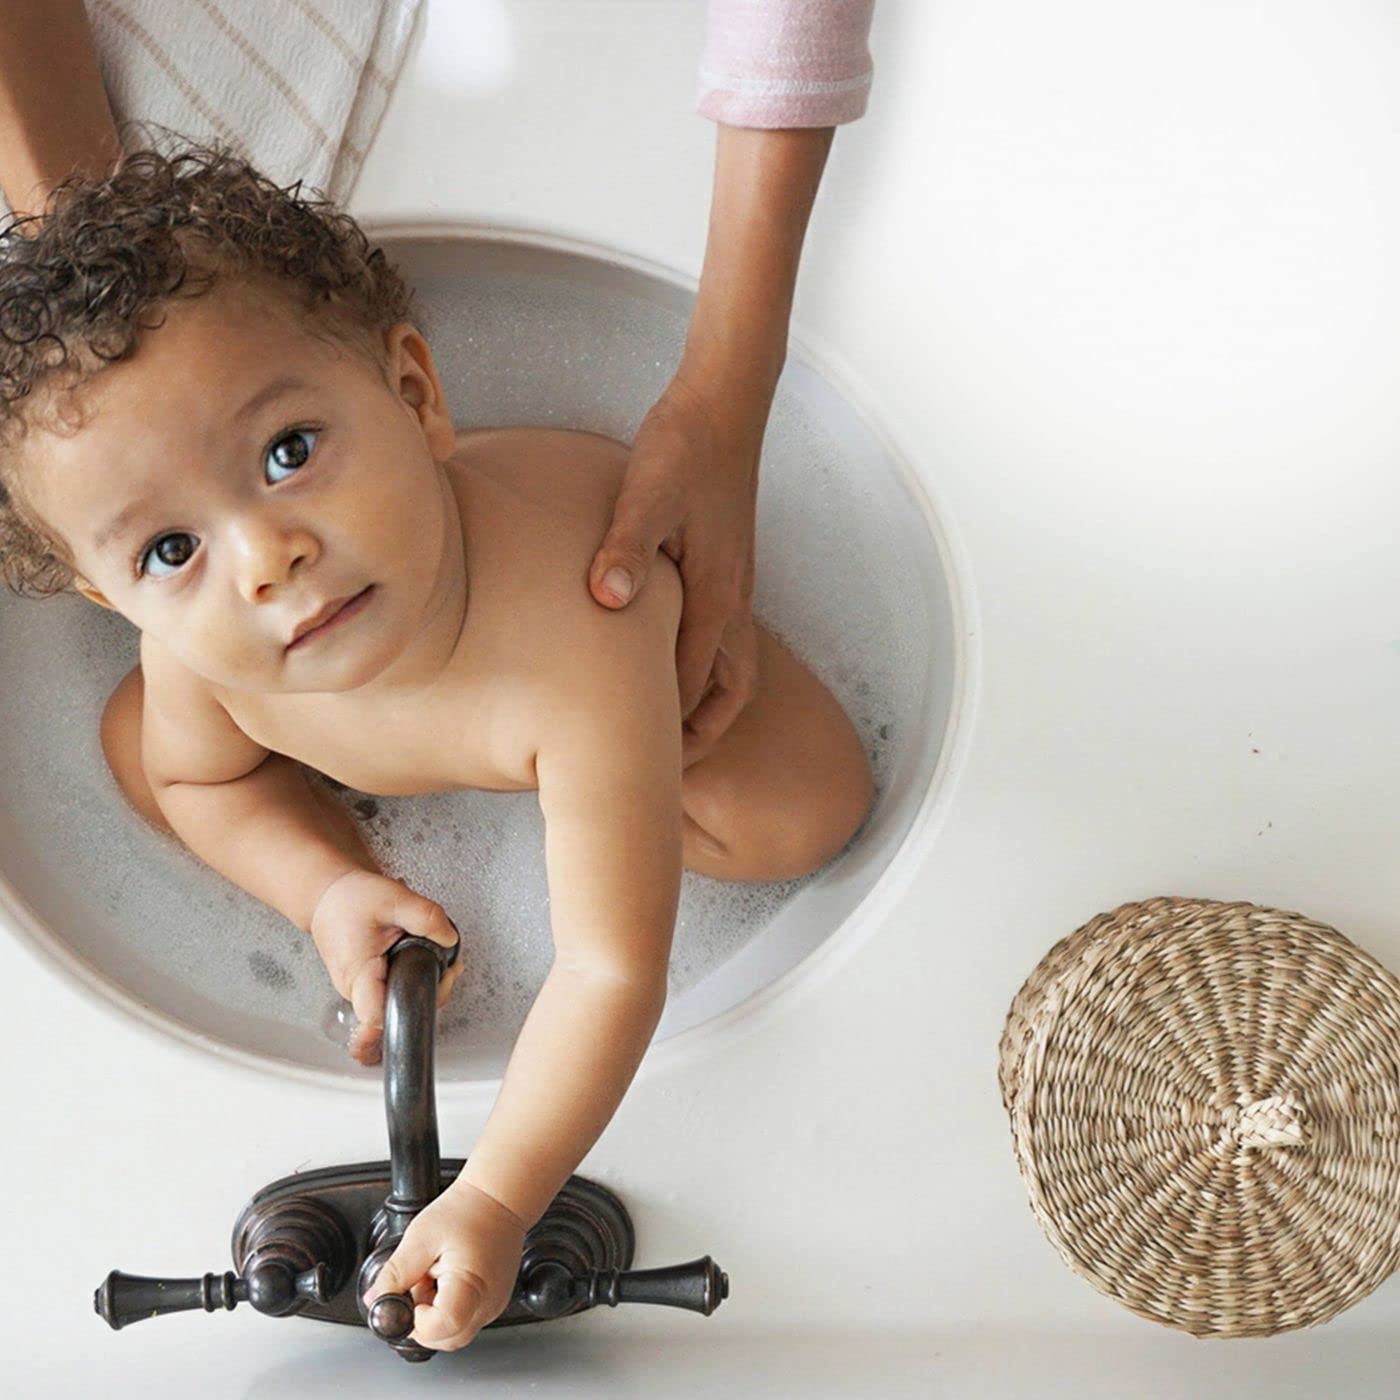 Cetaphil Baby Shampoo y Loción corporal